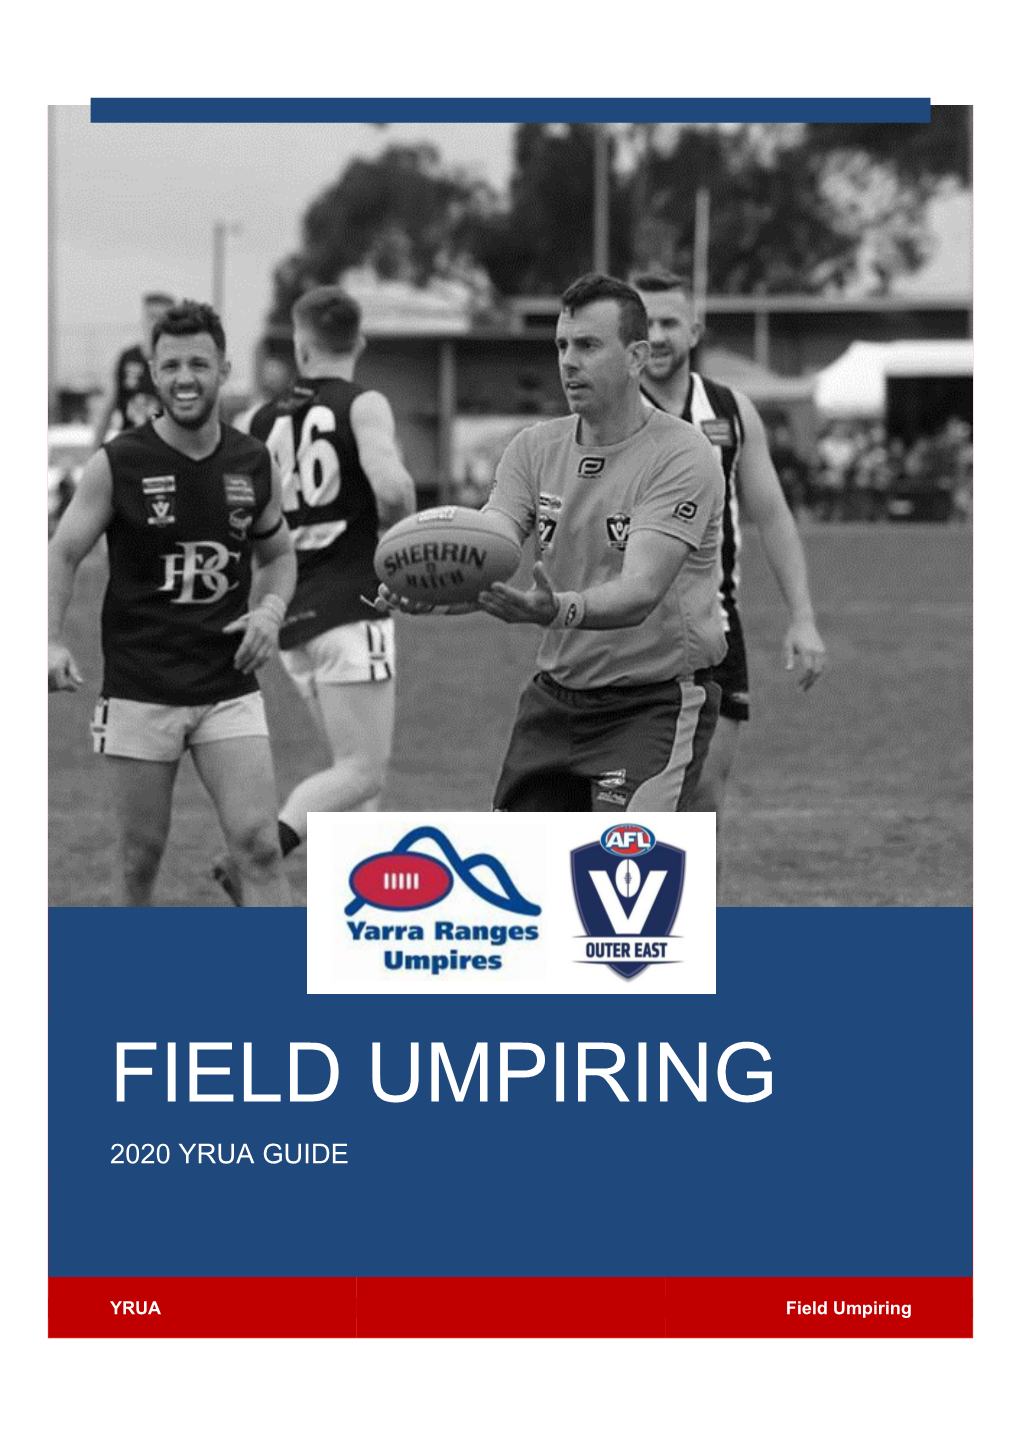 Field Umpiring 2020 Yrua Guide